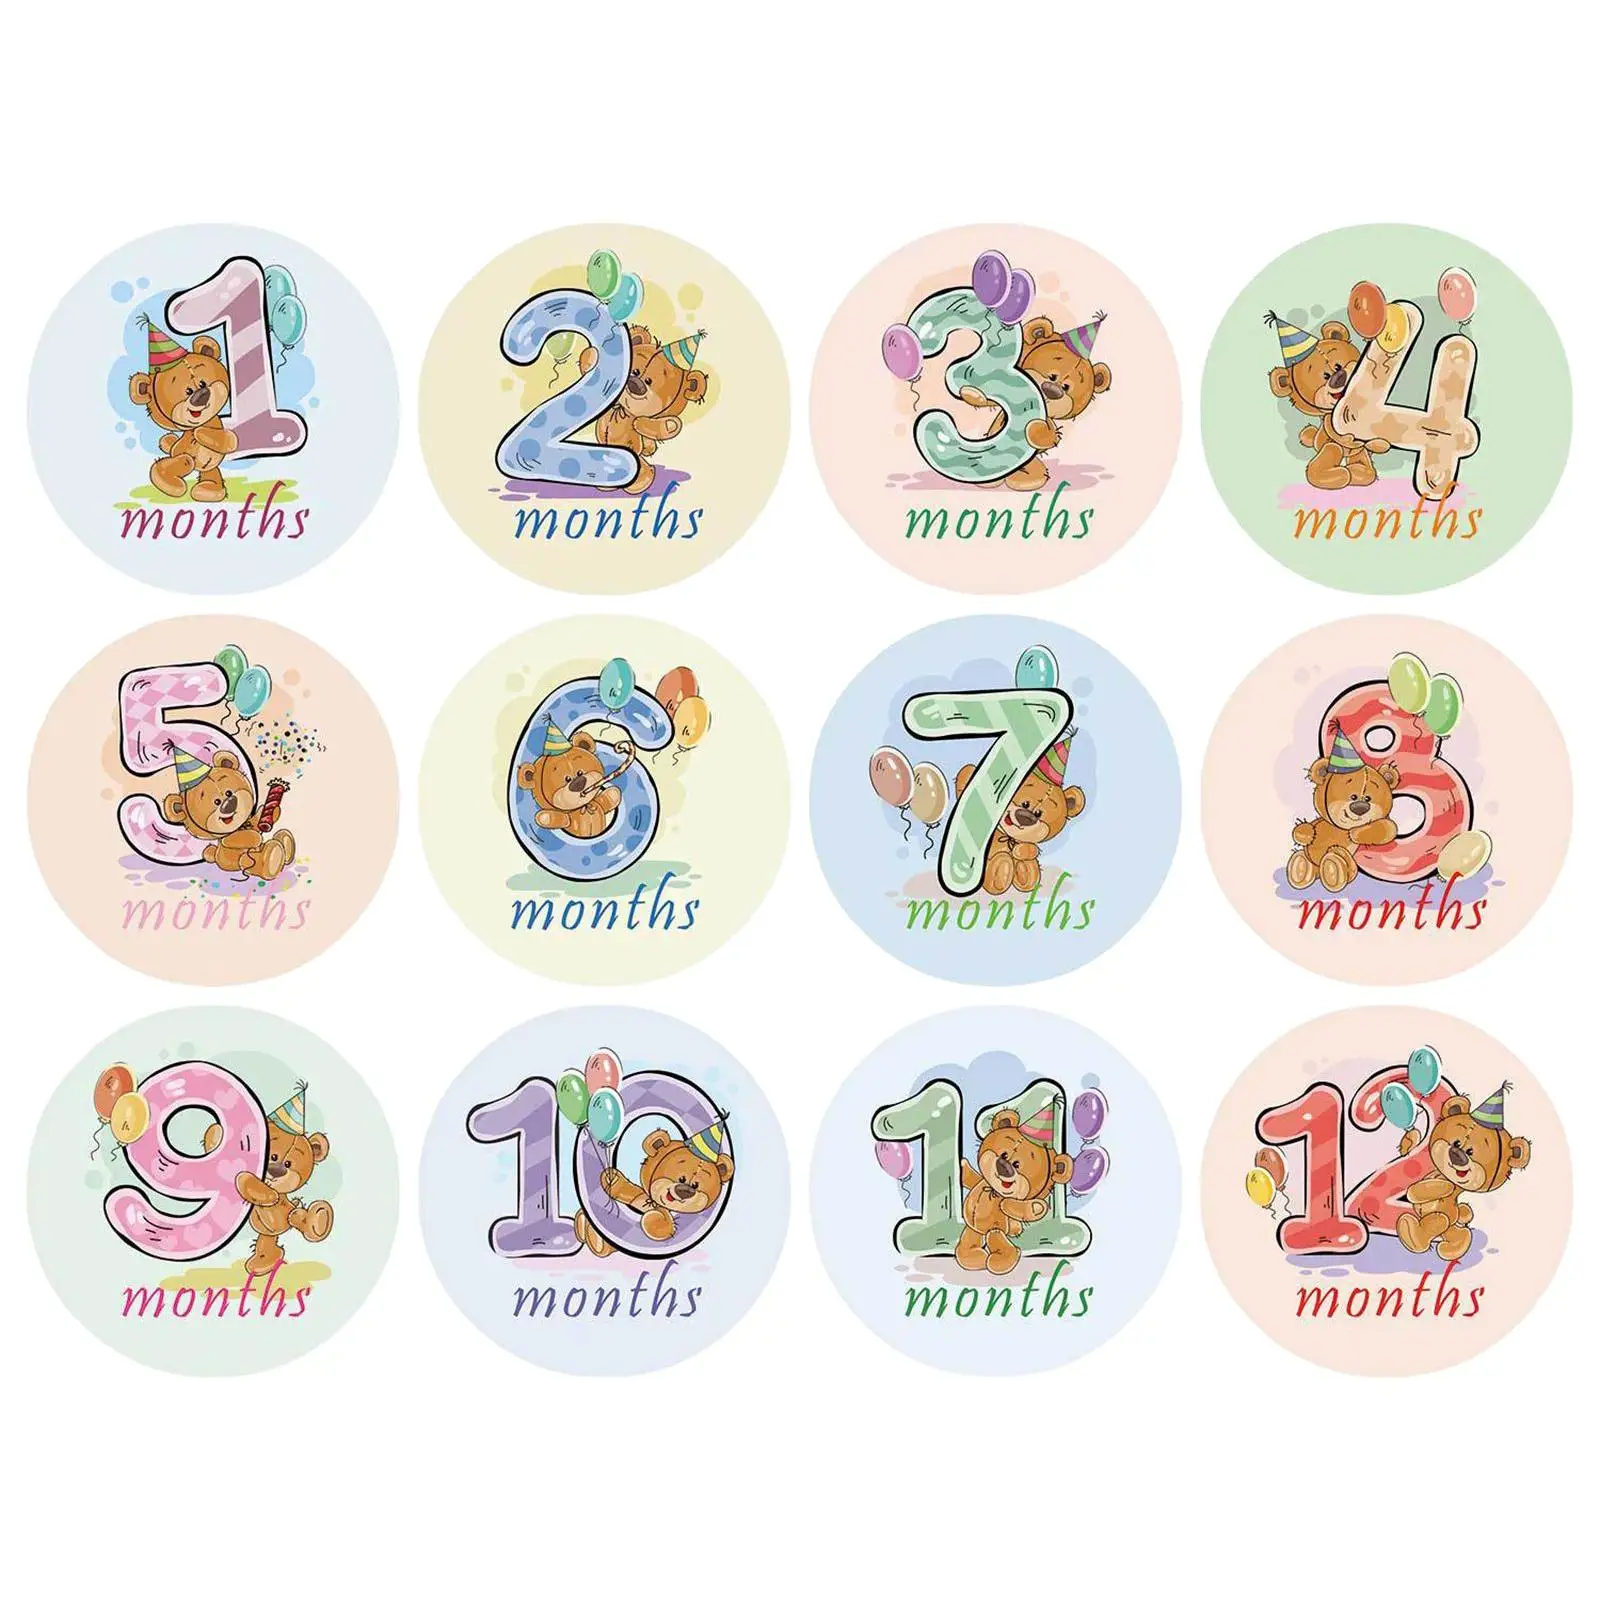 12x Baby Monthly Stickers Gender Neutral Milestone Stickers Cartoon Animal Newborn Baby Sticker Memories Photo Props Baby Shower